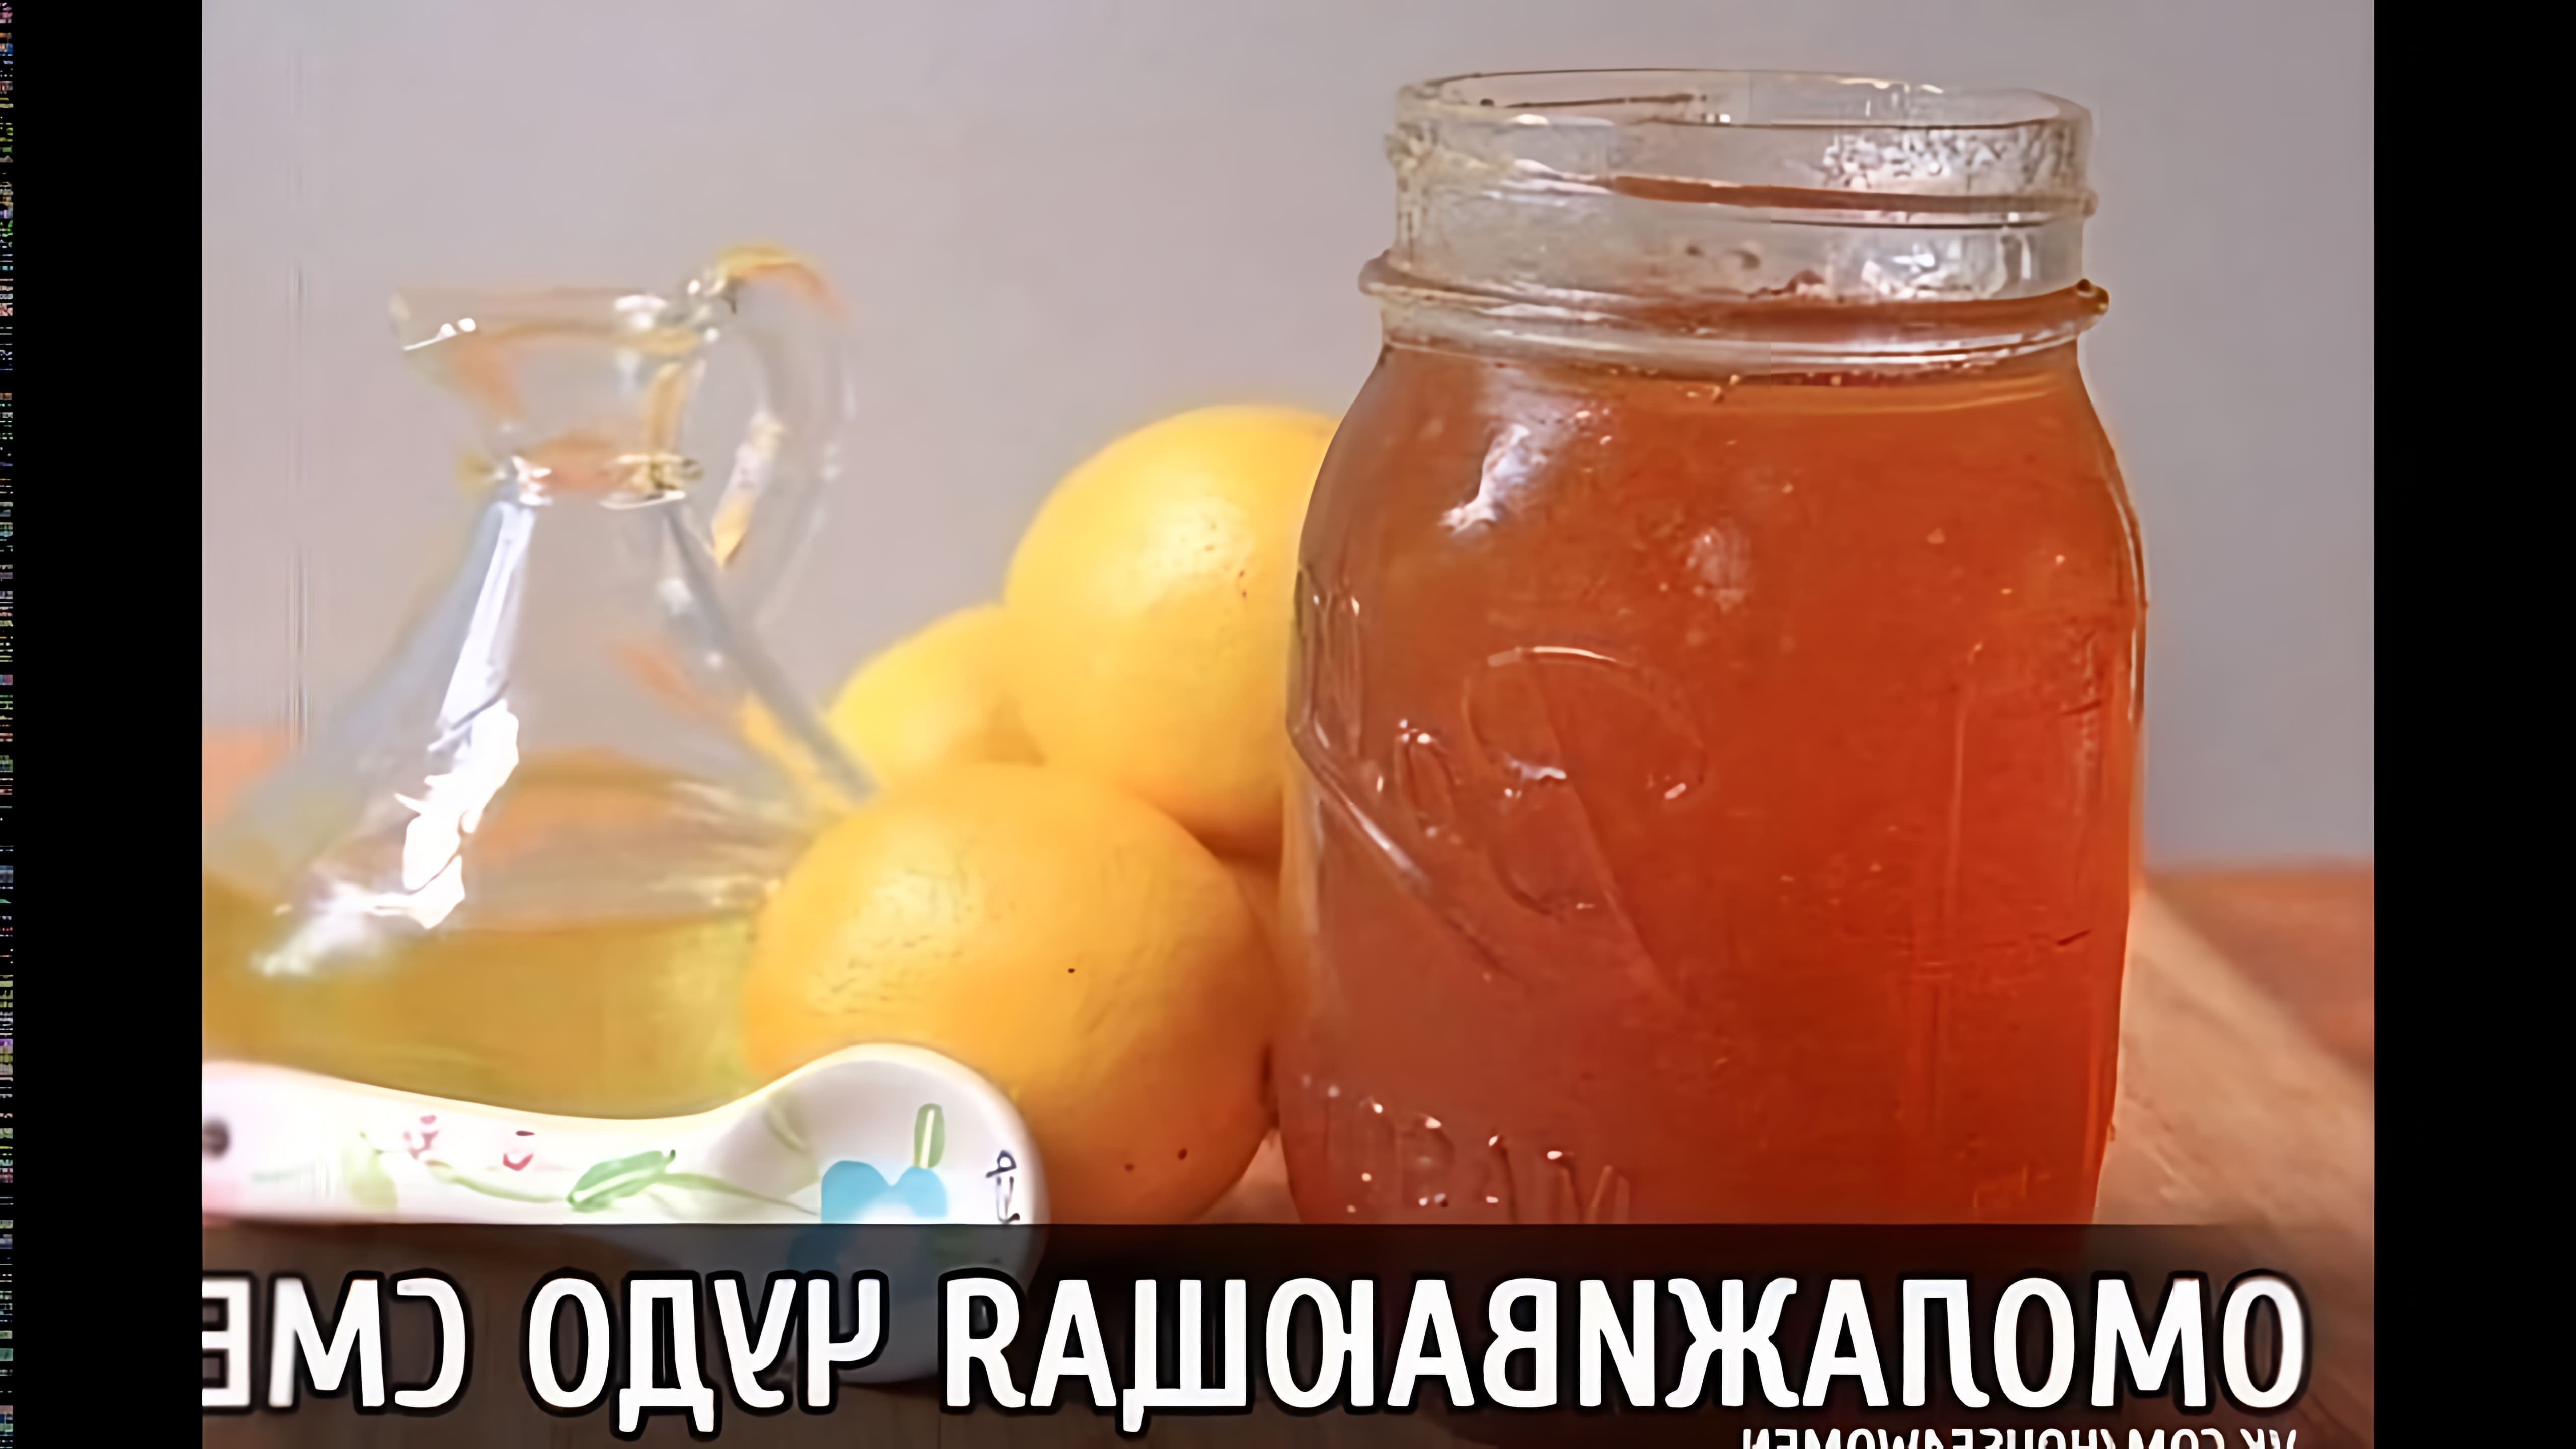 В этом видео-ролике будет представлен рецепт приготовления клюквенного джема с медом и чесноком